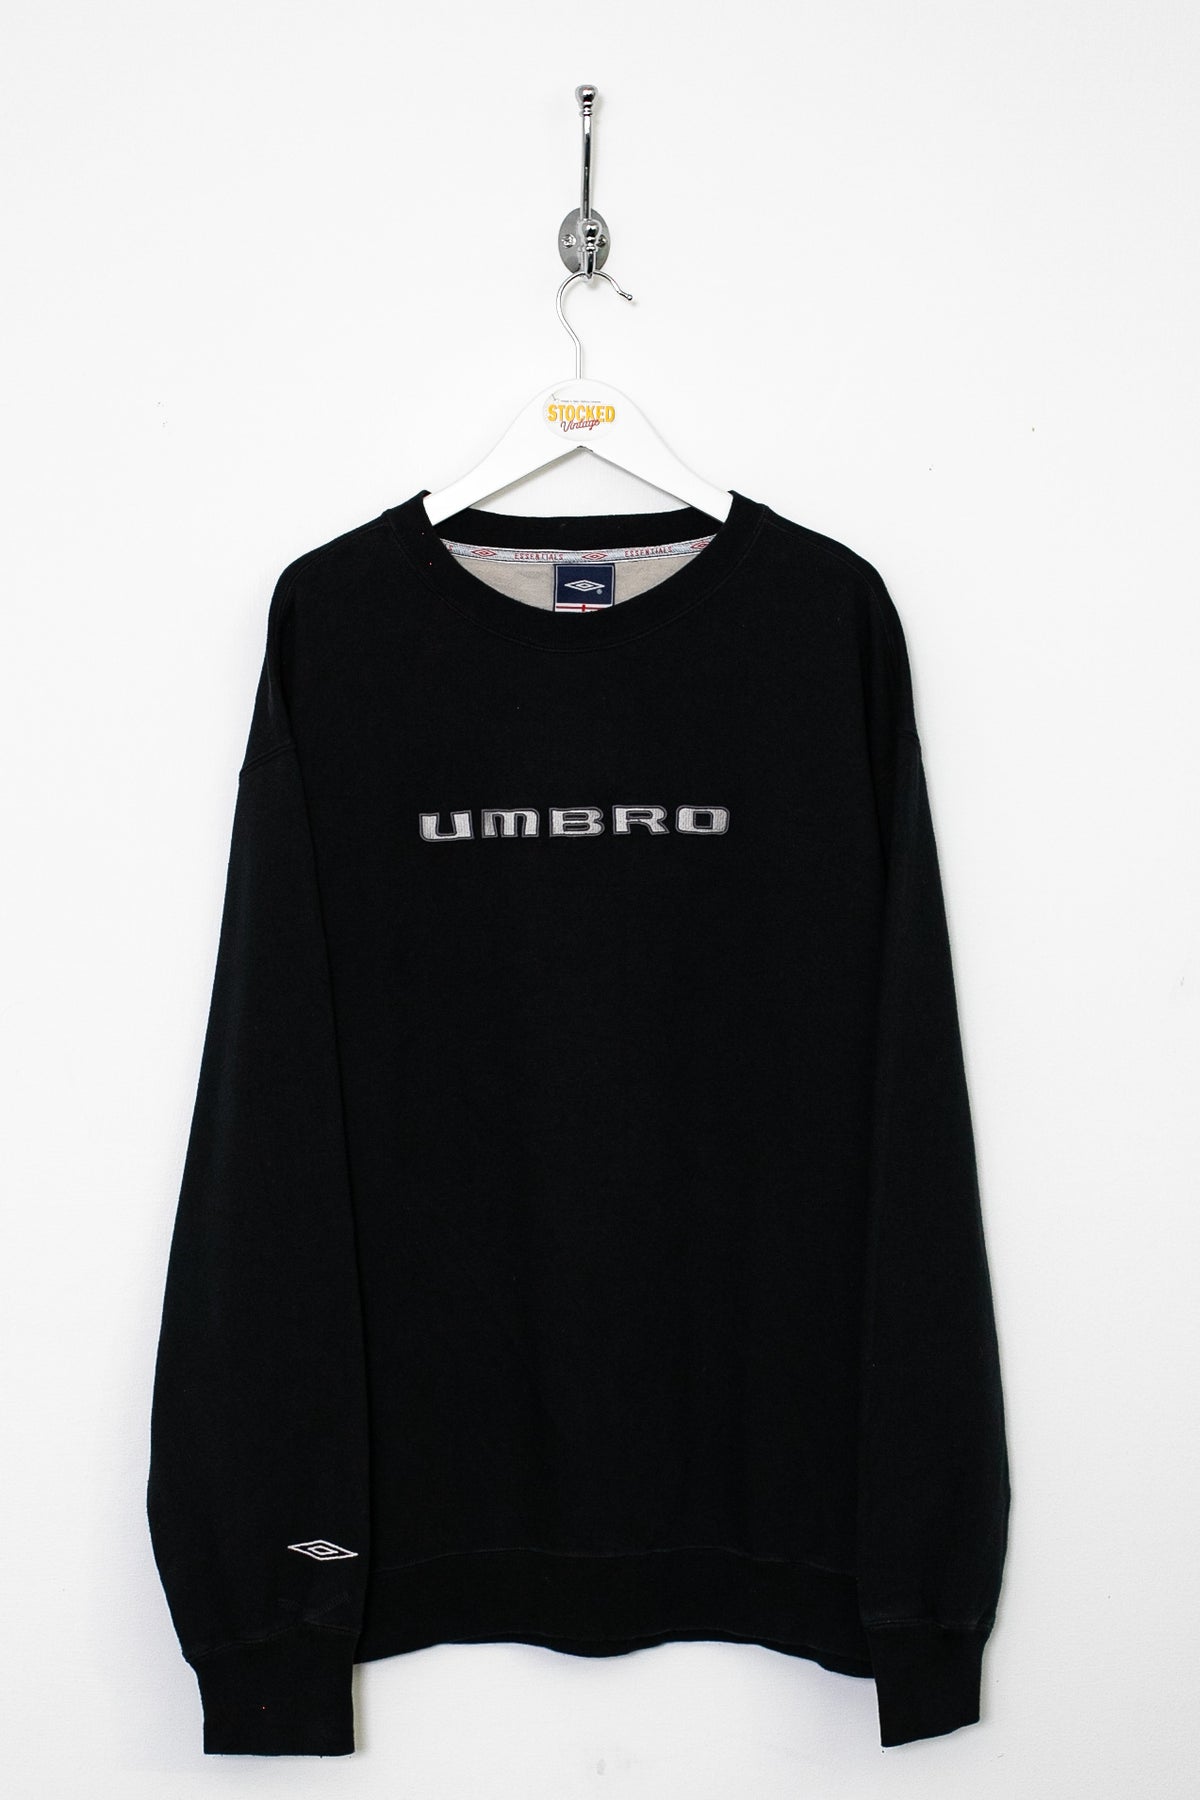 00s Umbro Sweatshirt (L)